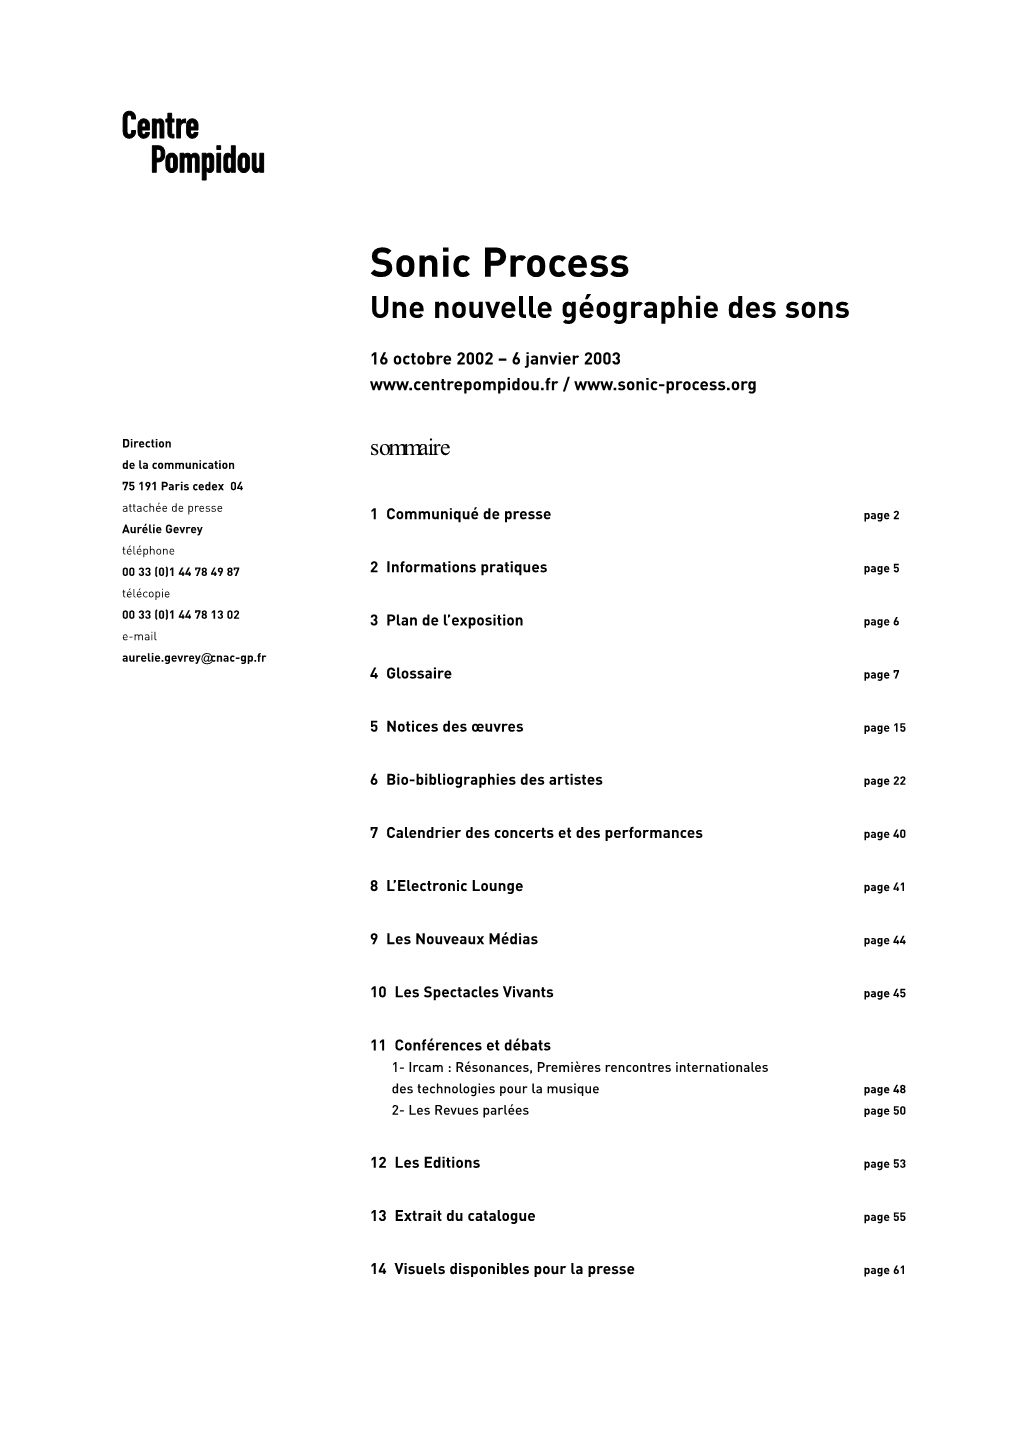 Sonic Process Une Nouvelle Géographie Des Sons